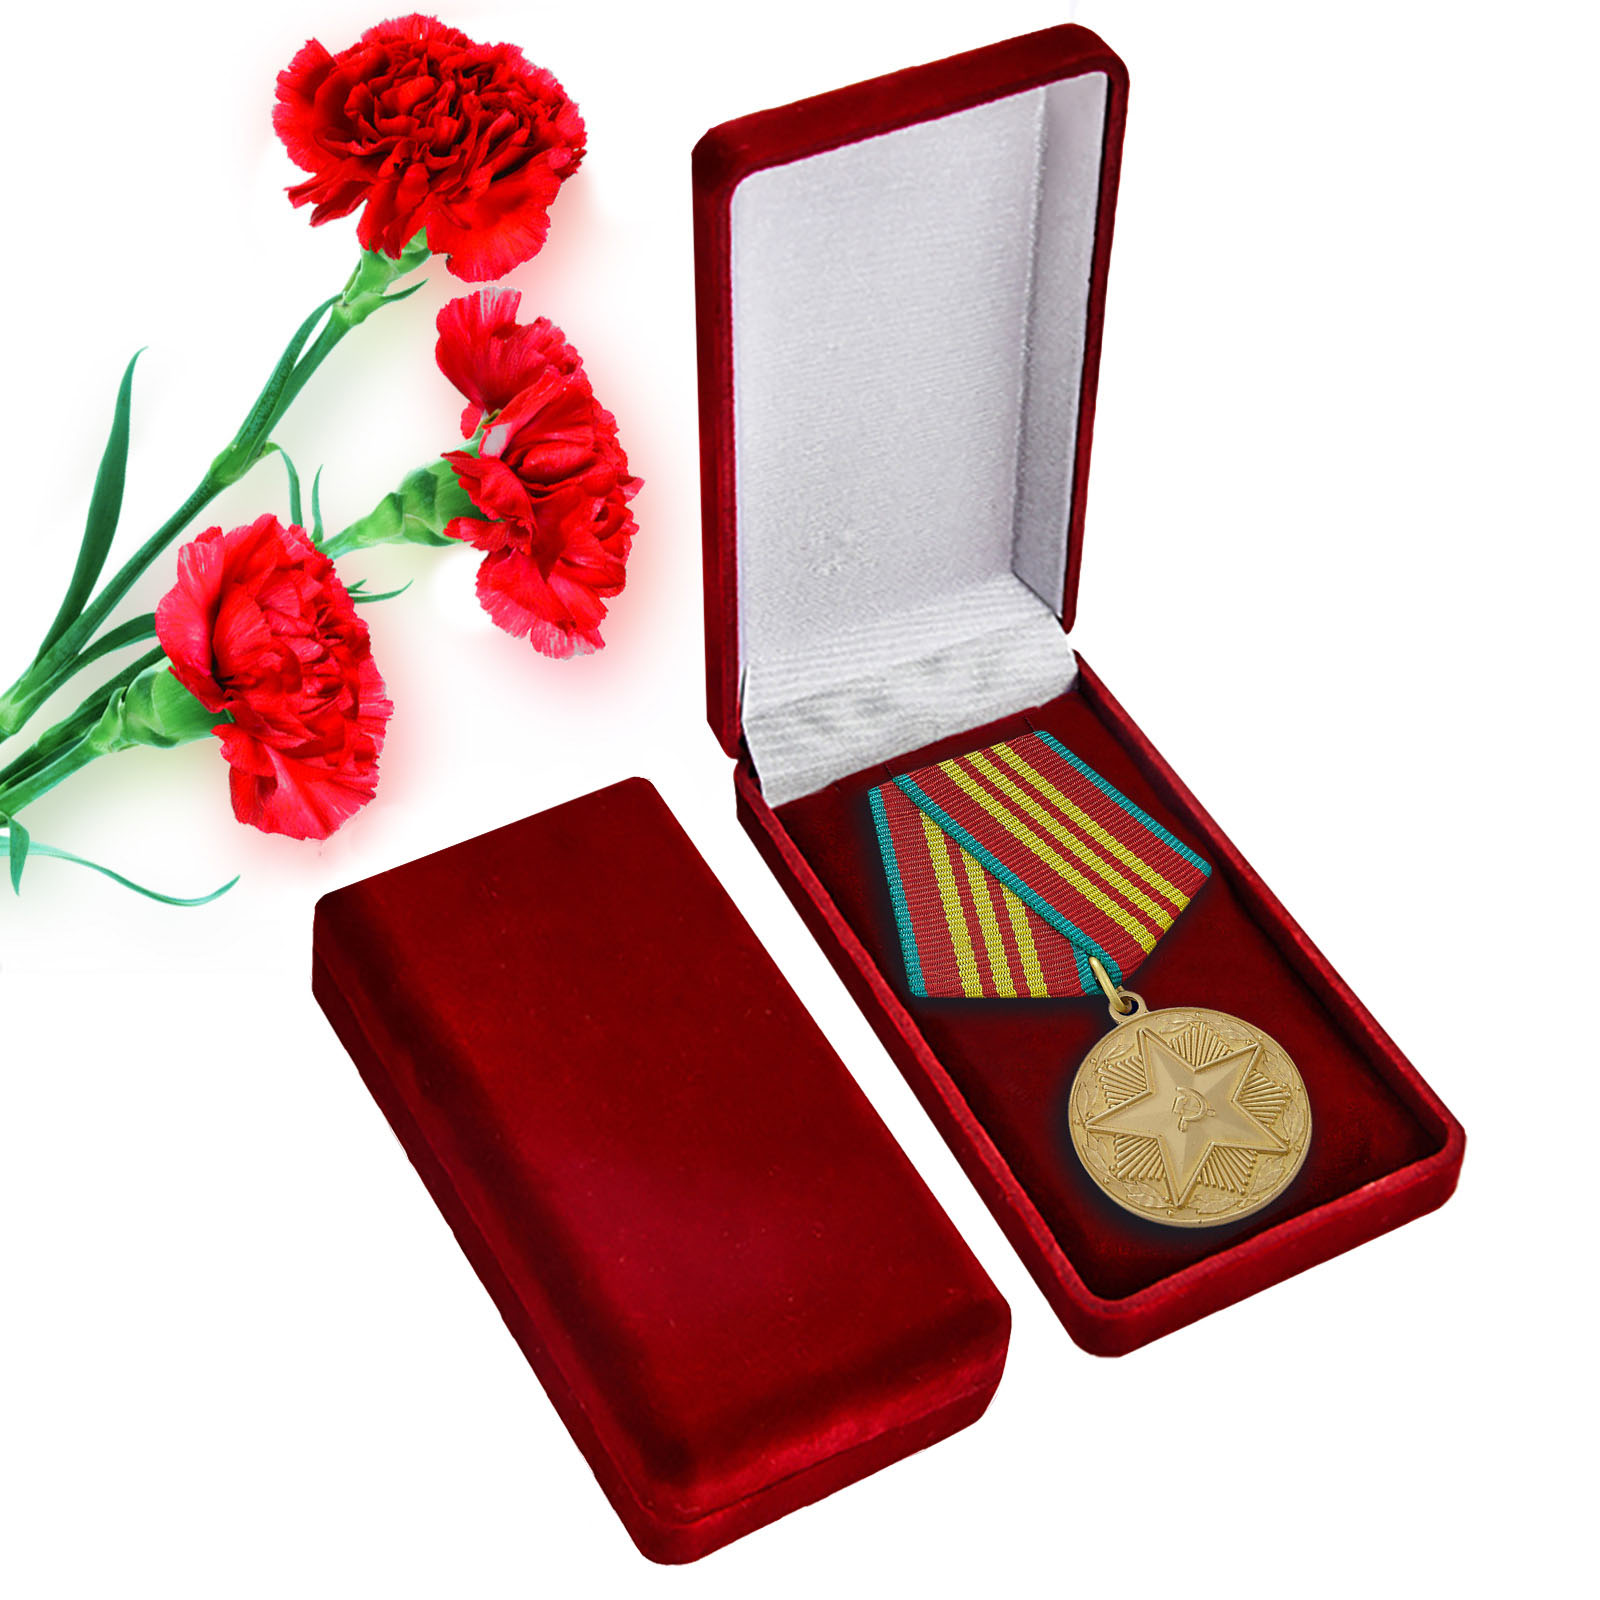 Реплика медали "За безупречную службу в Вооруженных Силах" третьей степени в футляре